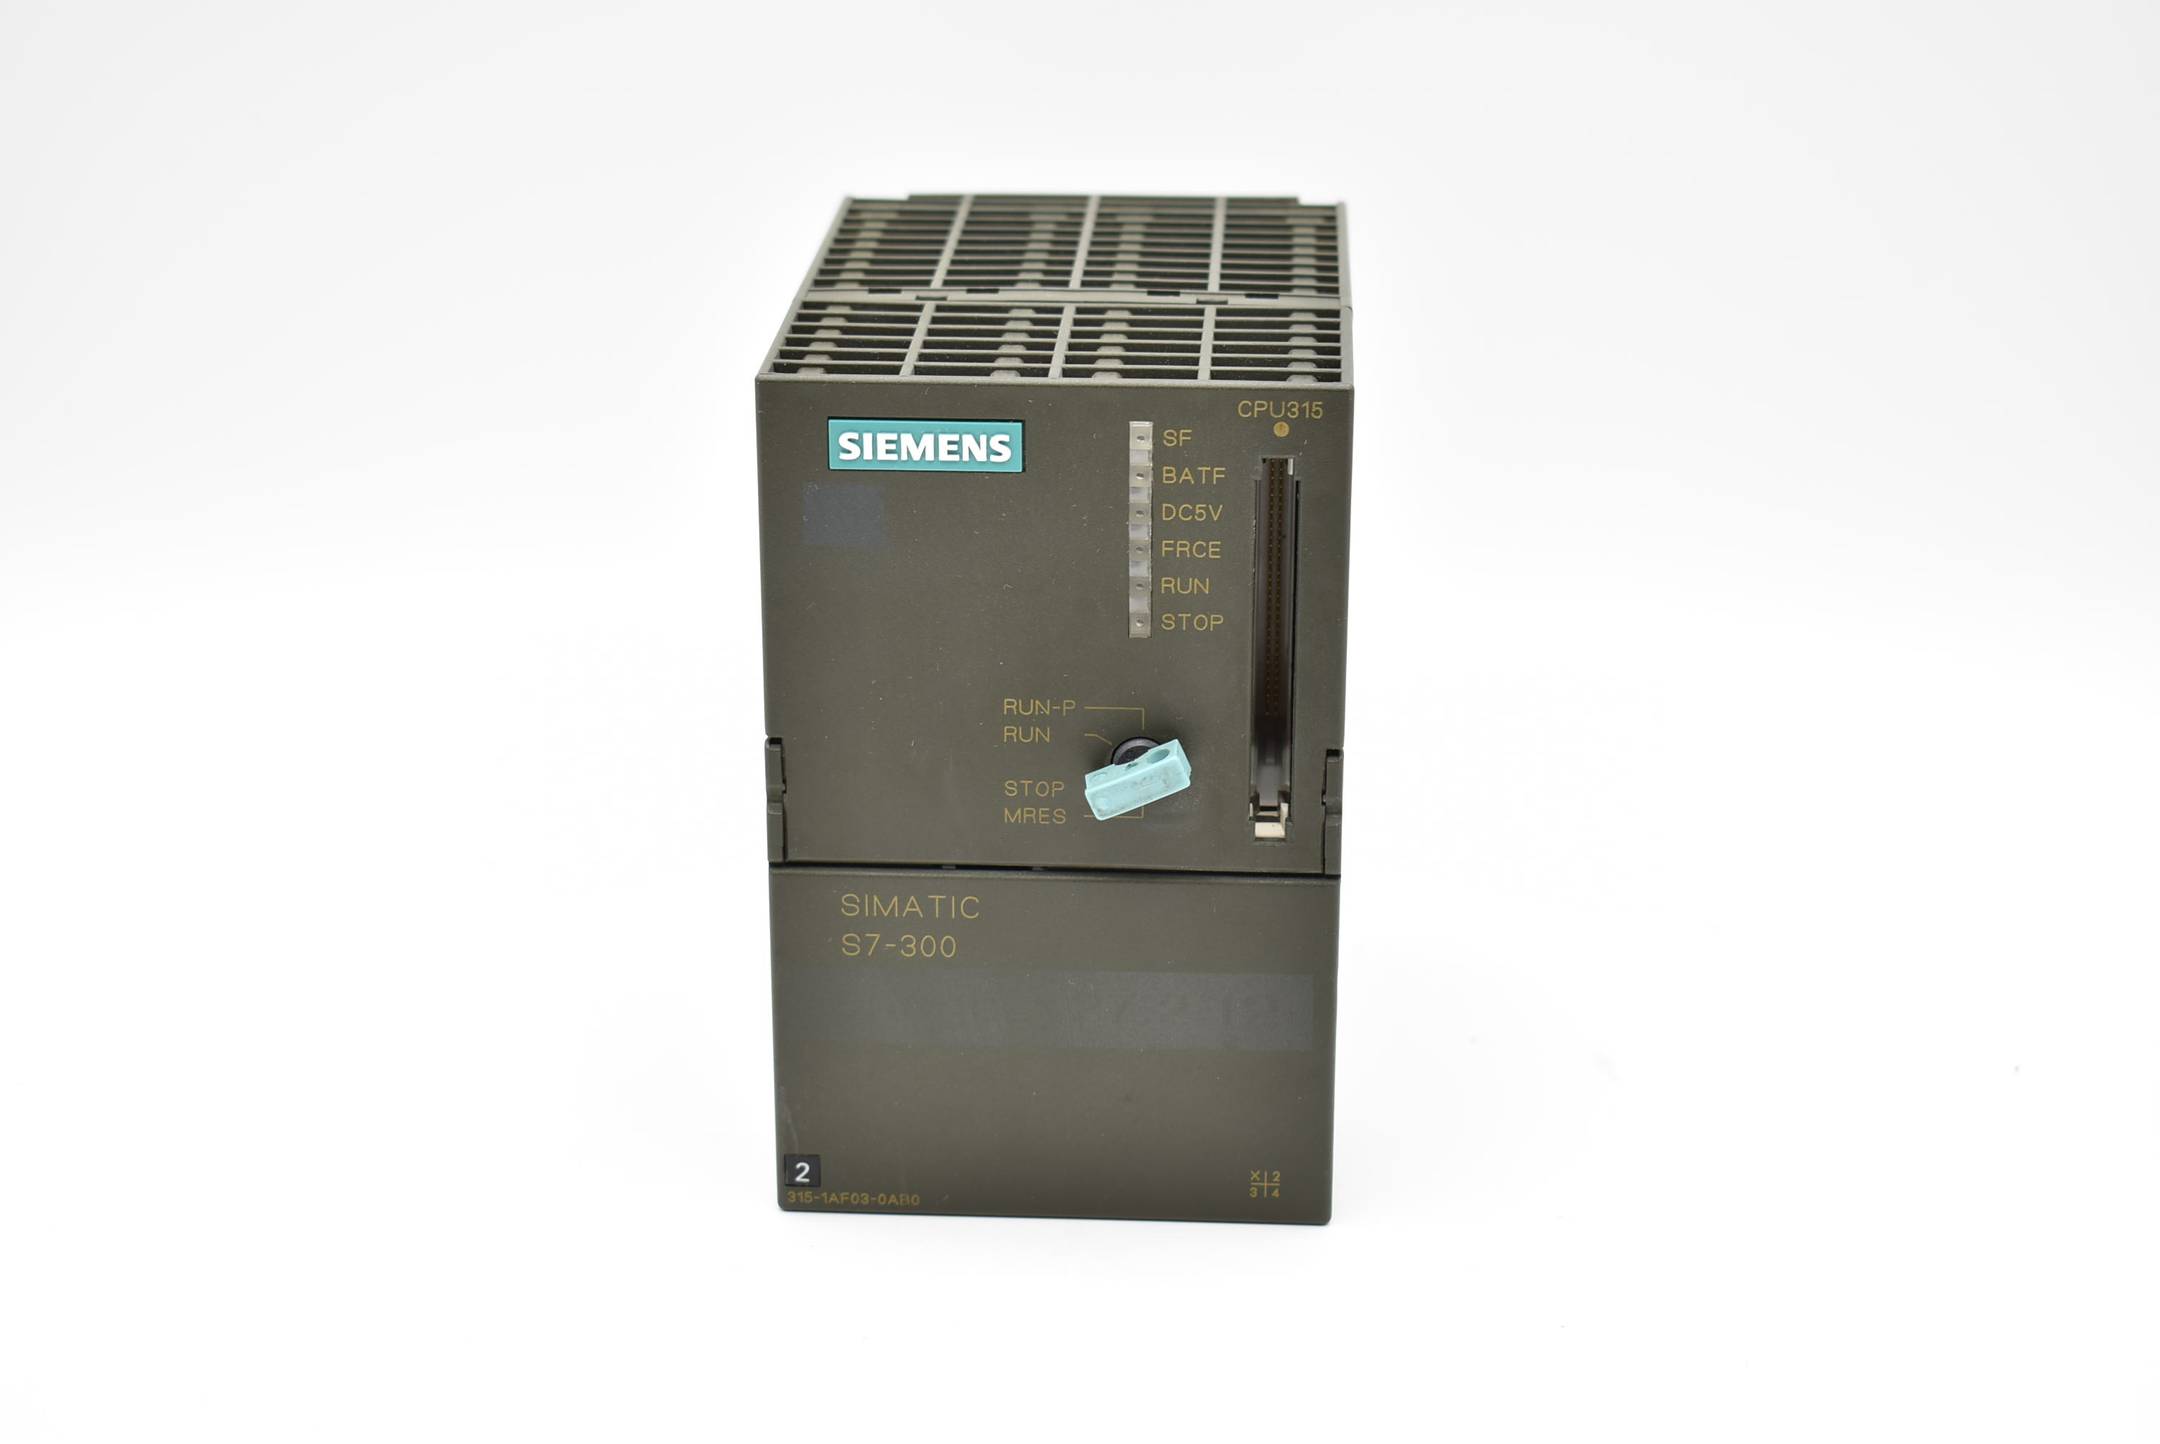 Siemens simatic S7-300 CPU 315 6ES7 315-1AF03-0AB0 ( 6ES7315-1AF03-0AB0 ) E.1